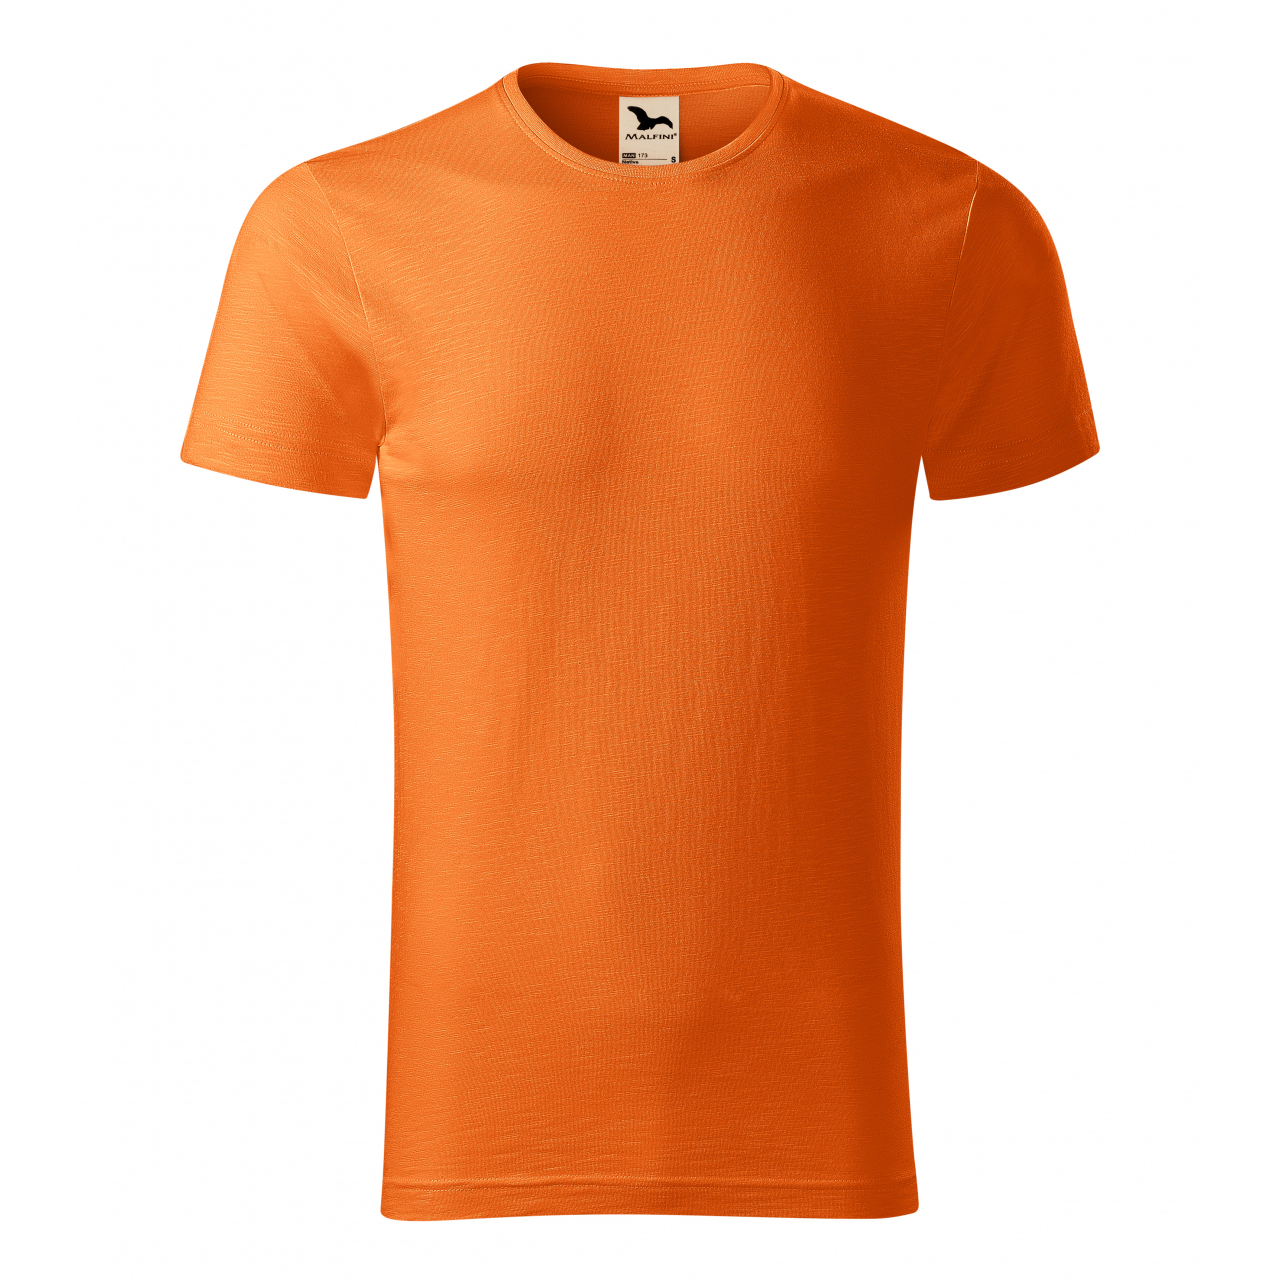 Tričko pánské Malfini Native - oranžové, S